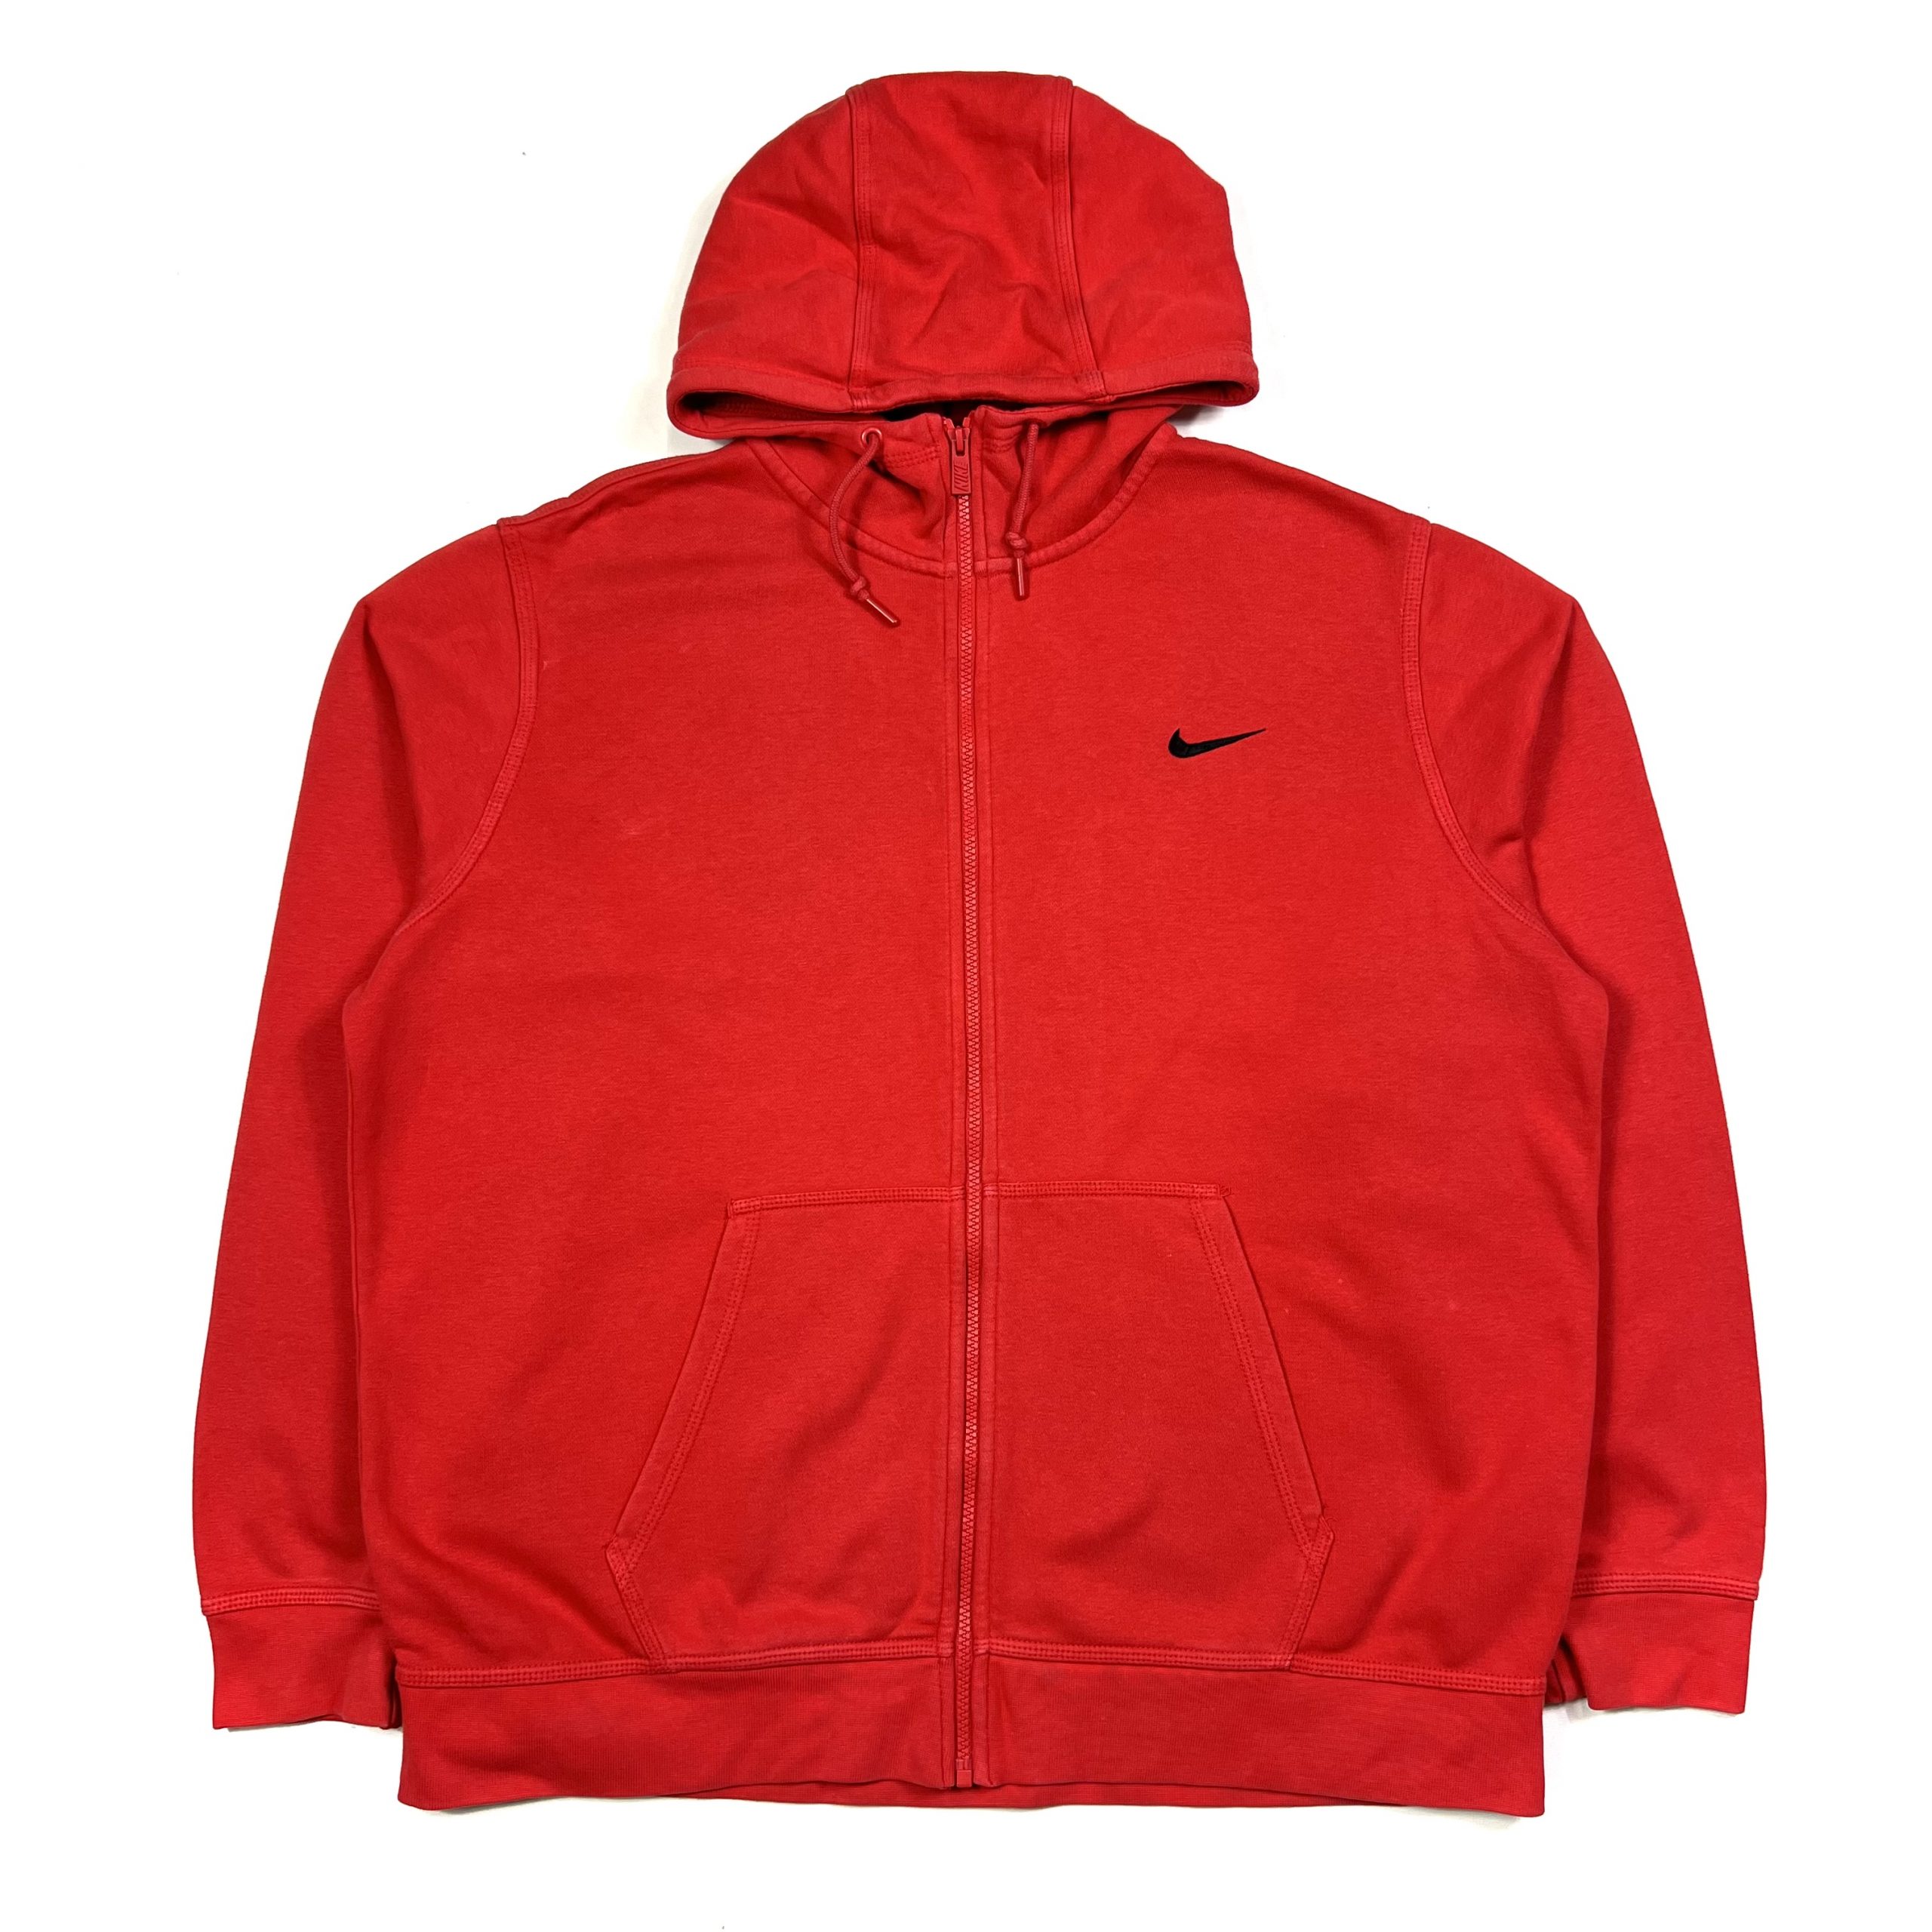 Nike Swoosh Zip Up Hoodie - Red - Hoodies - TMC Vintage